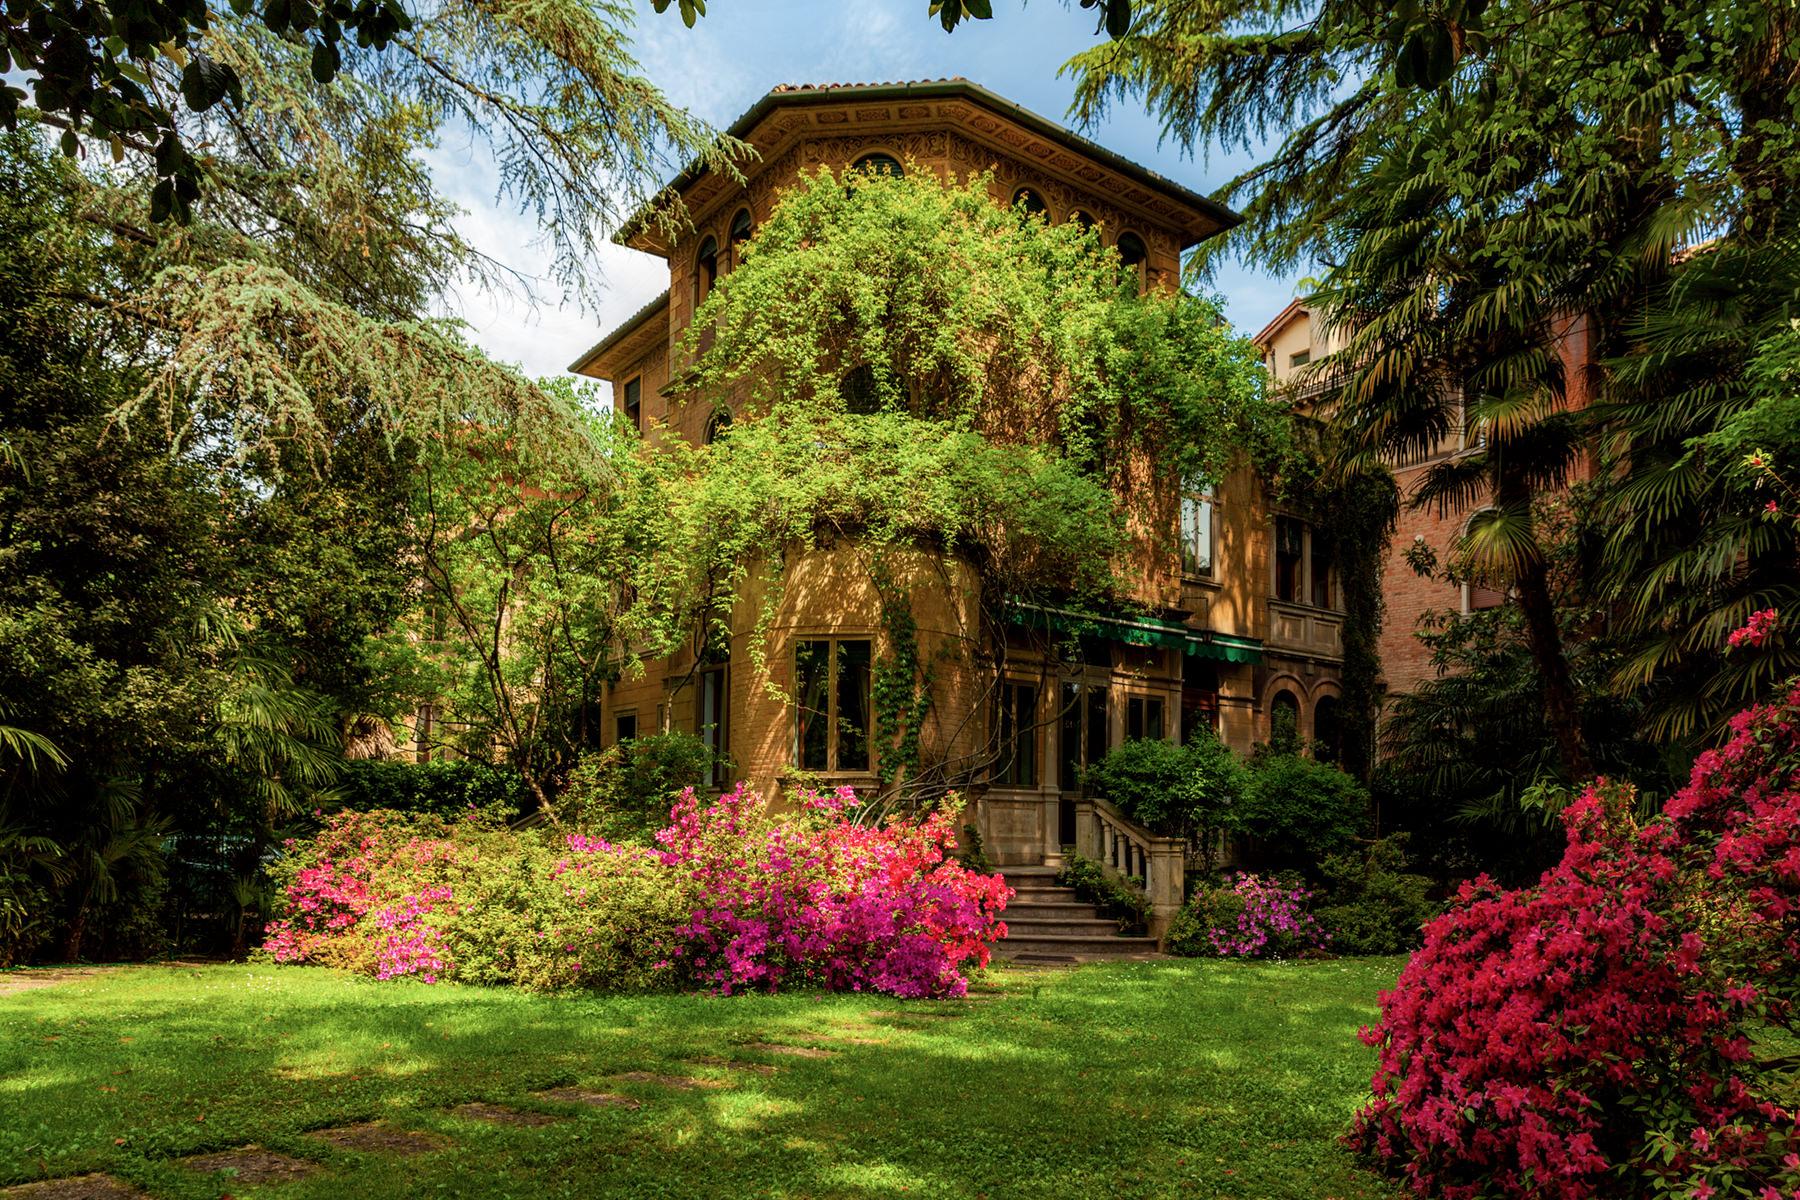 Meravigliosa villa Liberty nel cuore di Treviso - 1